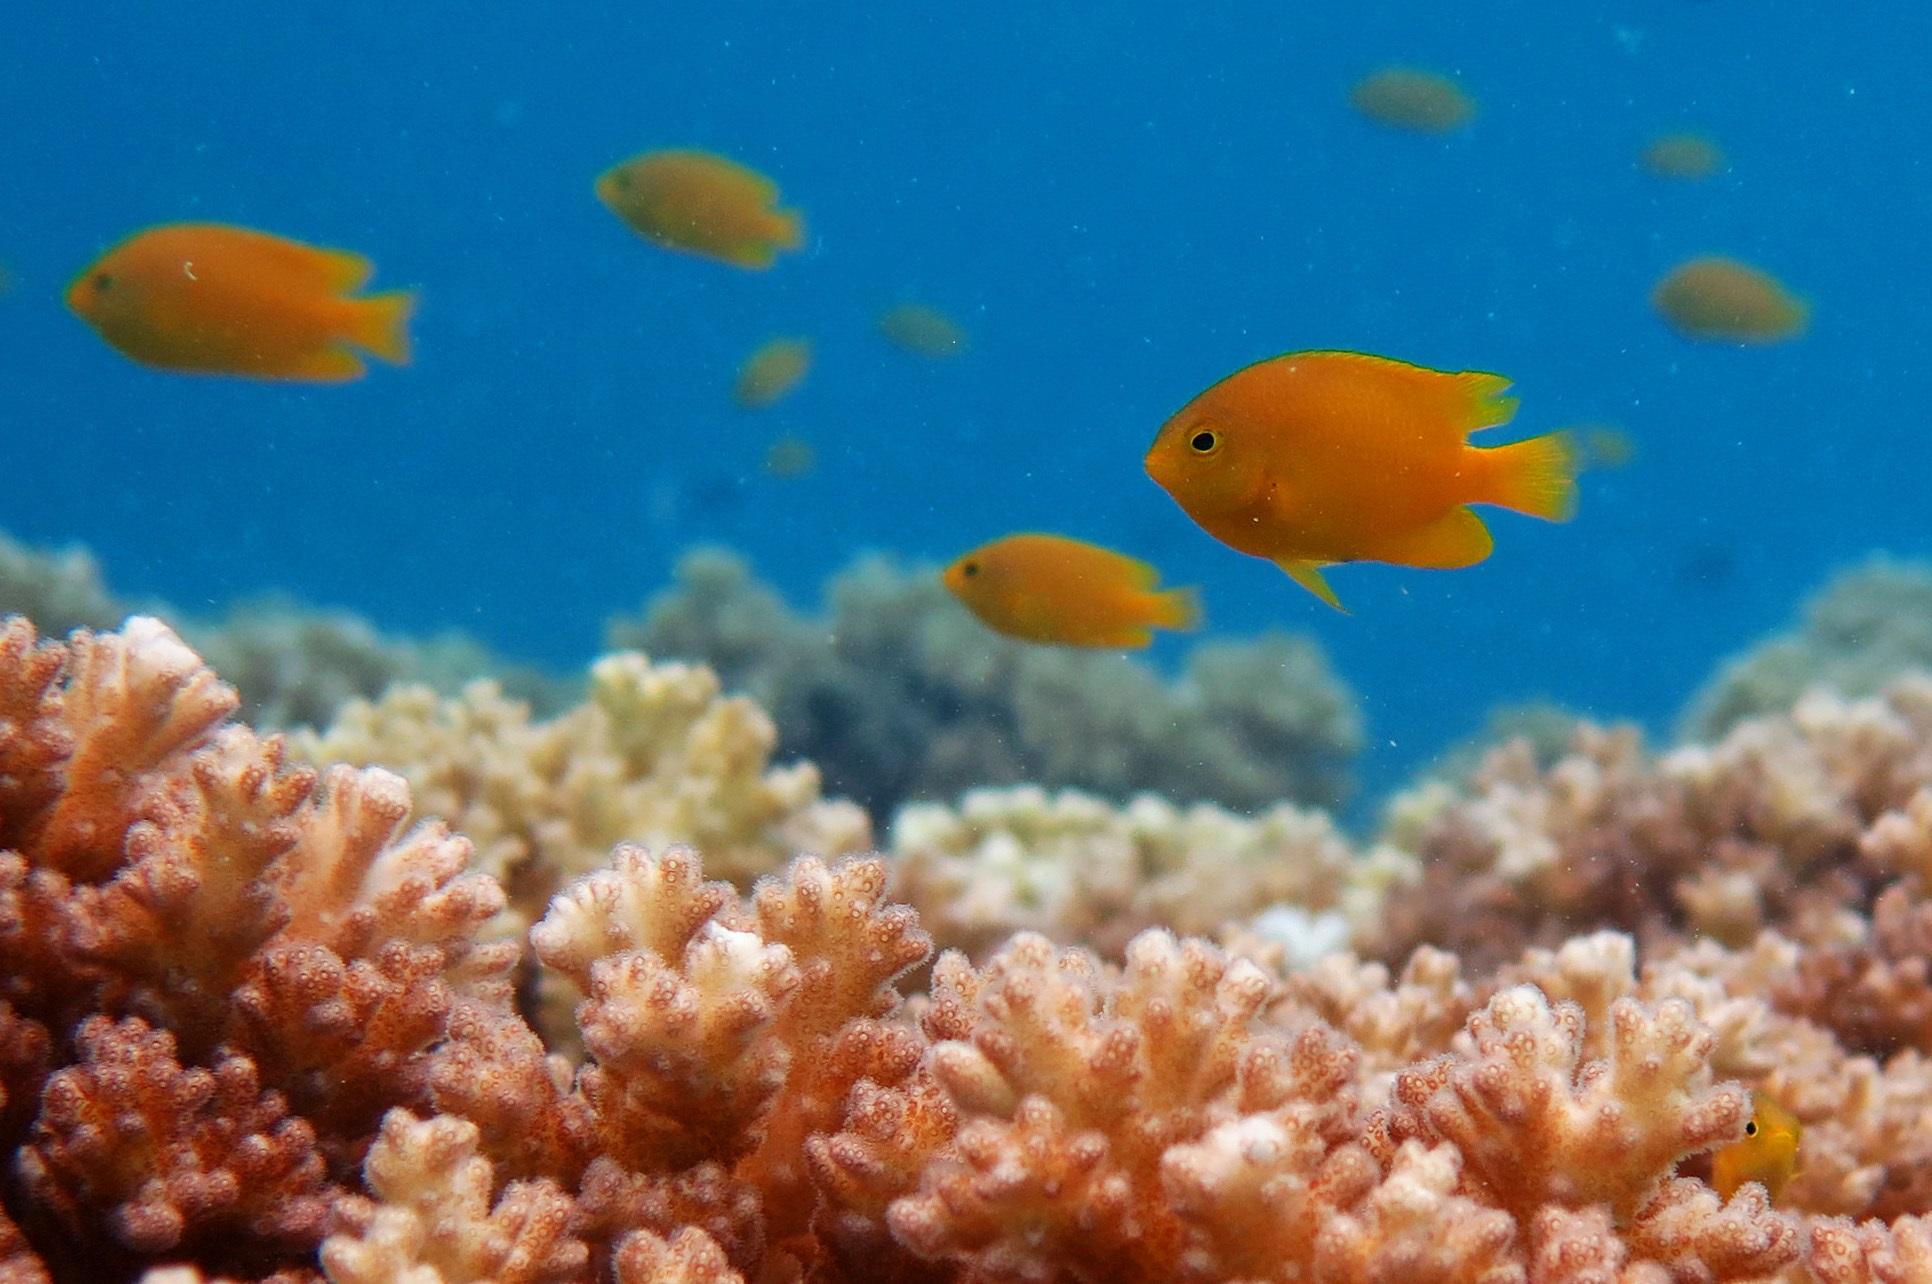 Den gula citronfrökenfisken, en korallrevsfisk som avger en alarmsubstans när den fångats av en rovfisk. Substansens dubbla verkan har nu klarlagts av en svensk-australisk forskargrupp. (Foto: Oona Lönnstedt)